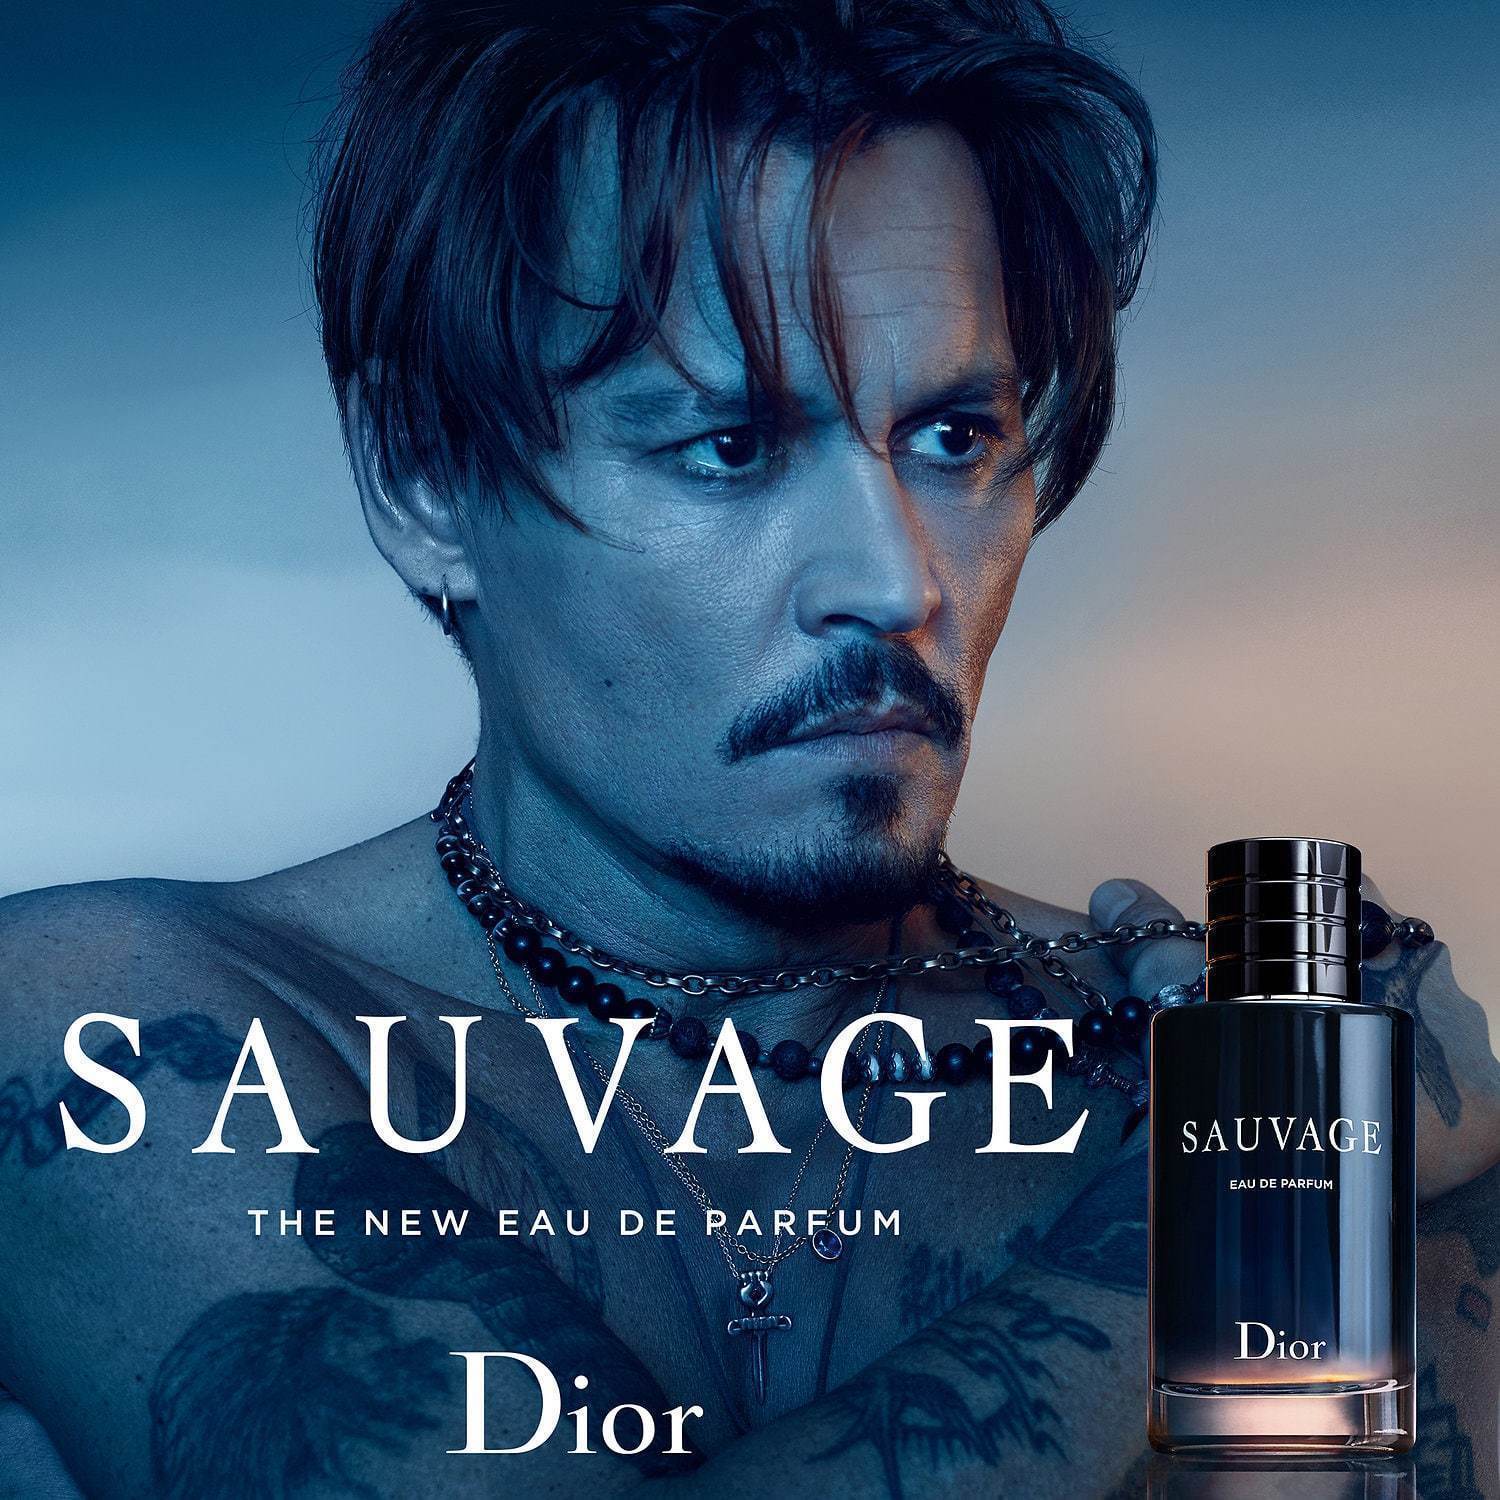 Johnny Depp Savage Sauvage Eau de Cologne Poster